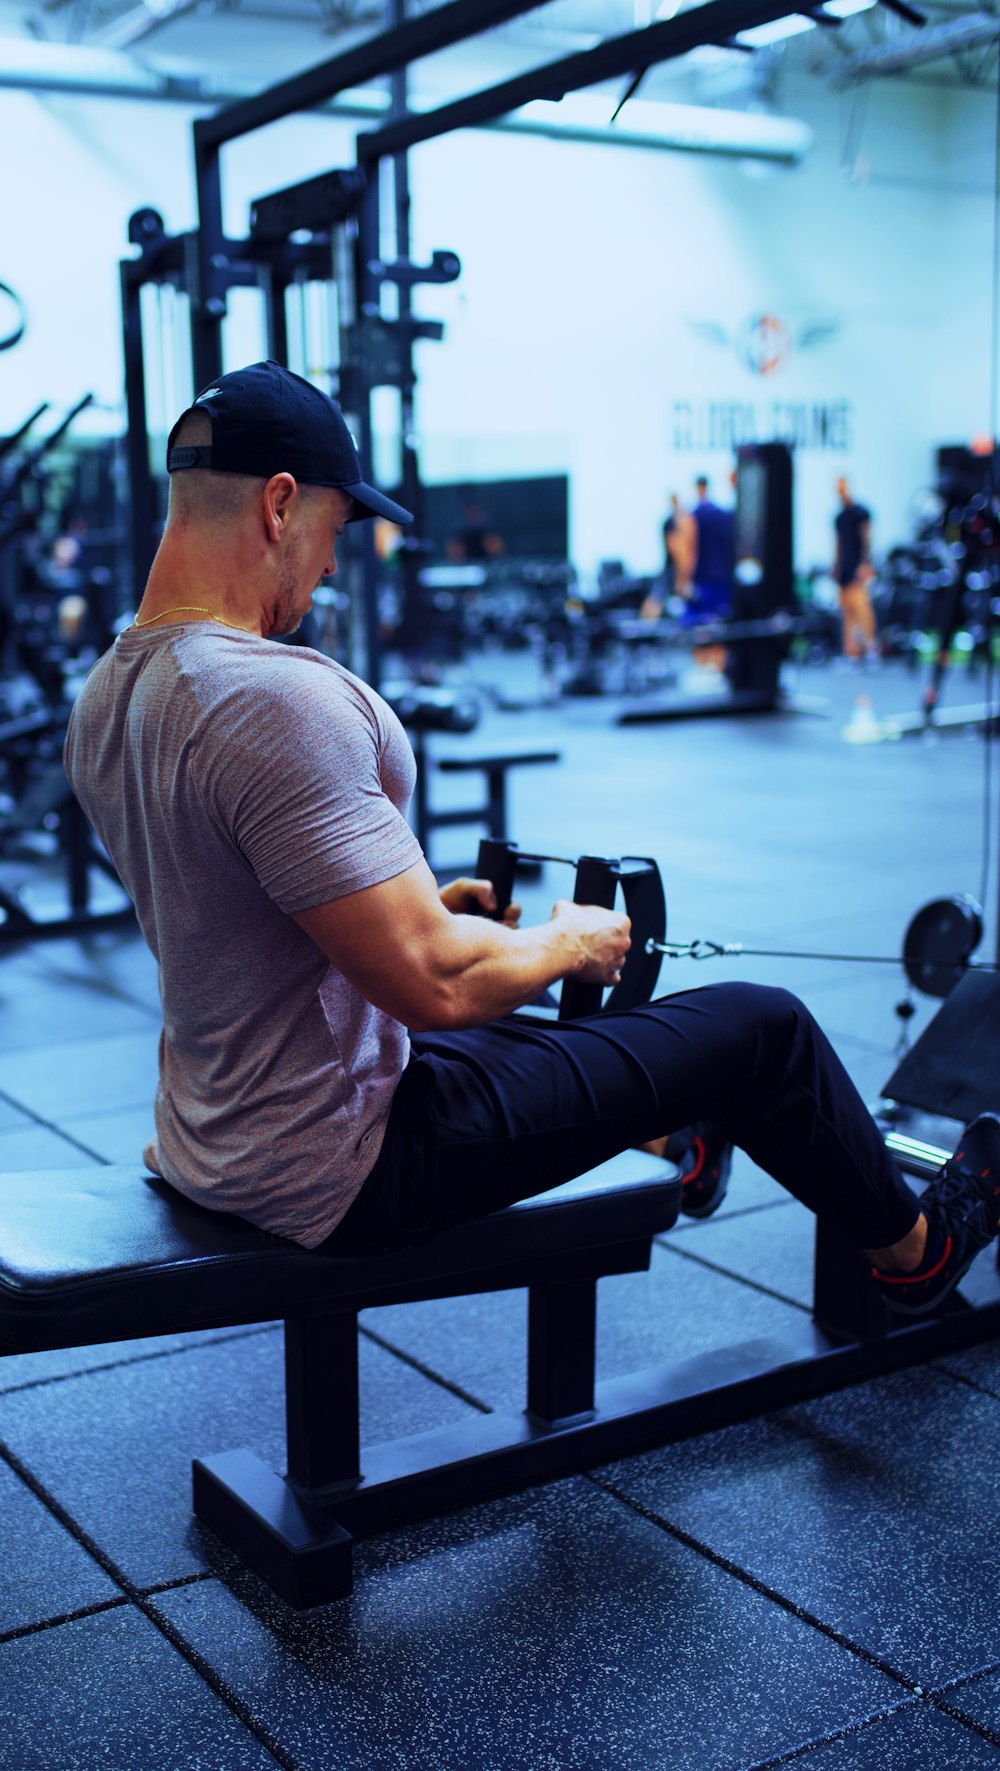 Imágenes de Gym Men  Descarga imágenes gratuitas en Unsplash